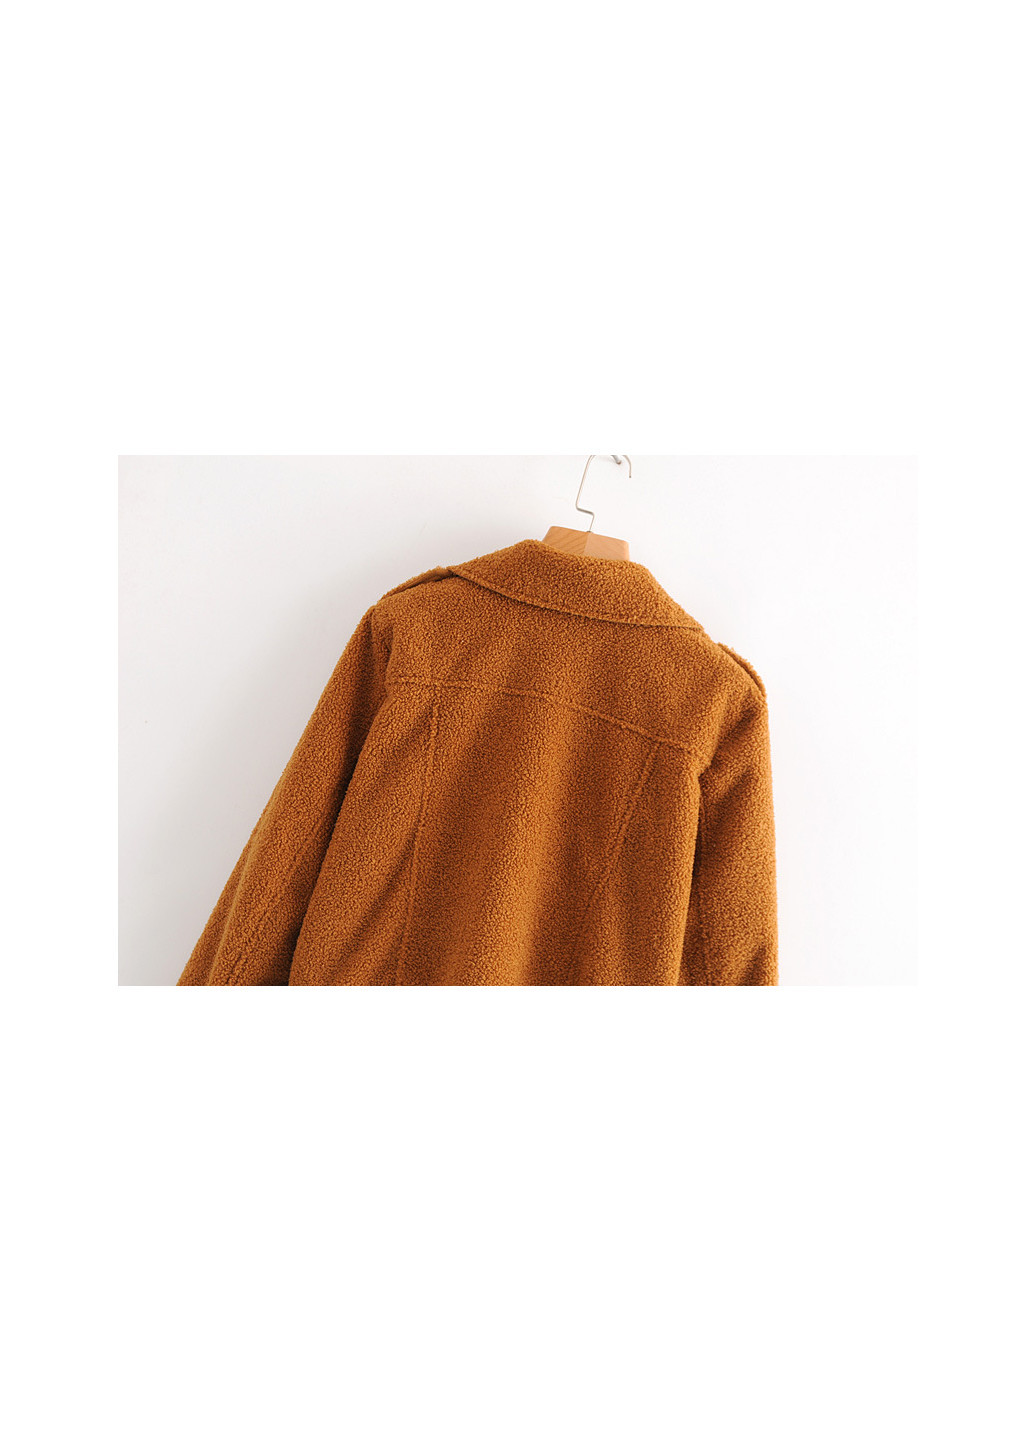 Коричневая демисезонная куртка-косуха женская из искусственного меха fleecy Berni Fashion 55616